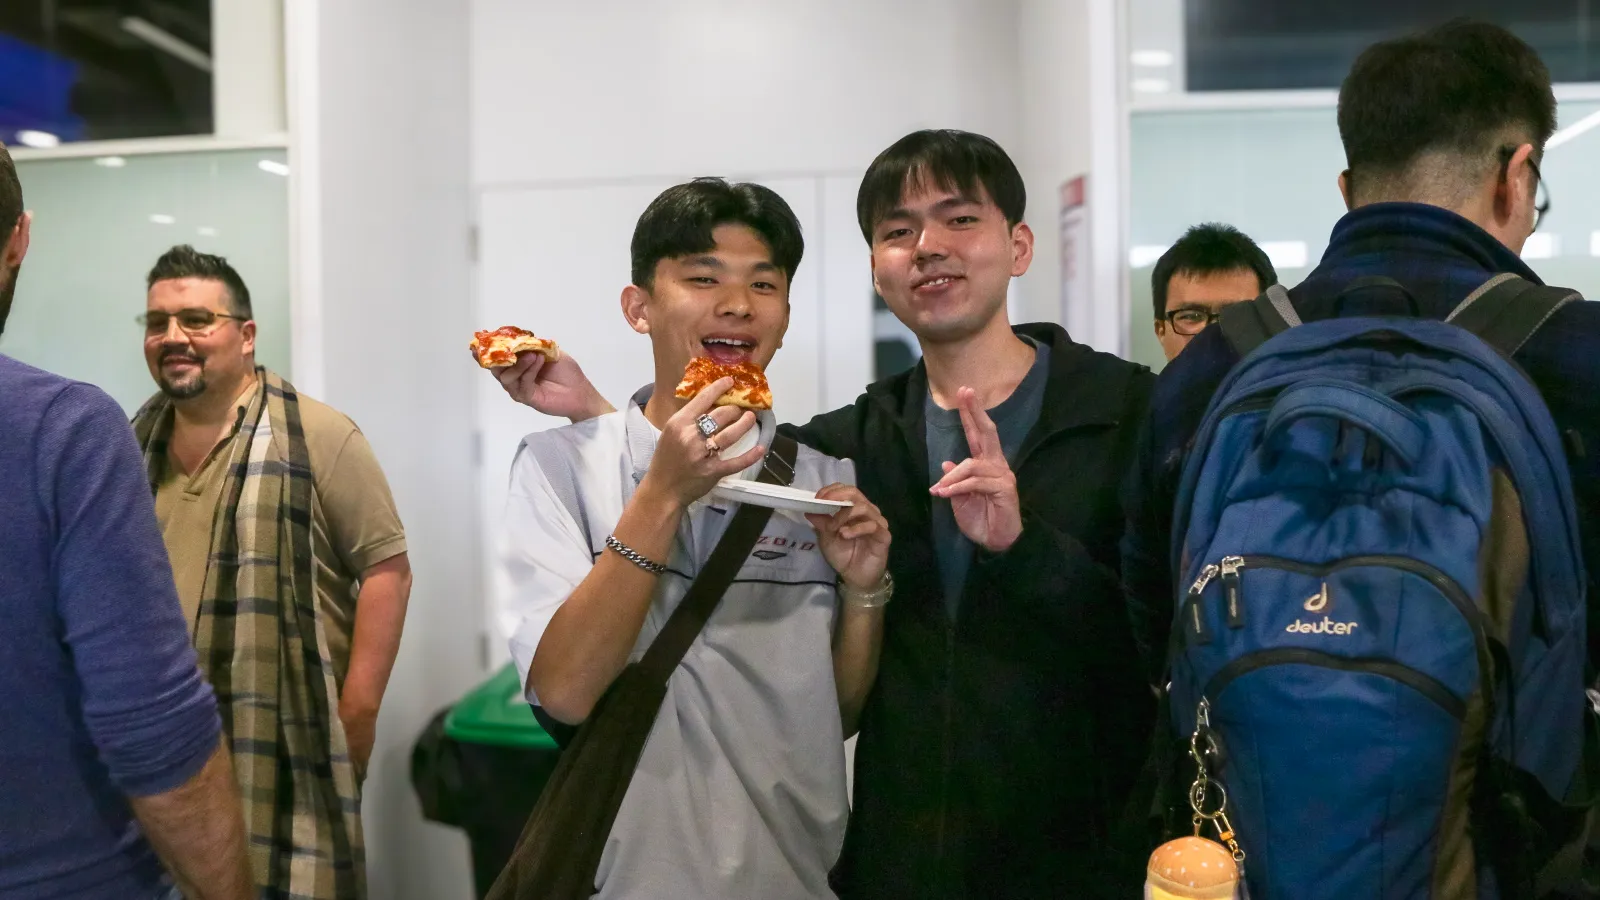 Dos estudiantes de Singapur muestran la pizza que están comiendo mientras conocen el campus de Europa